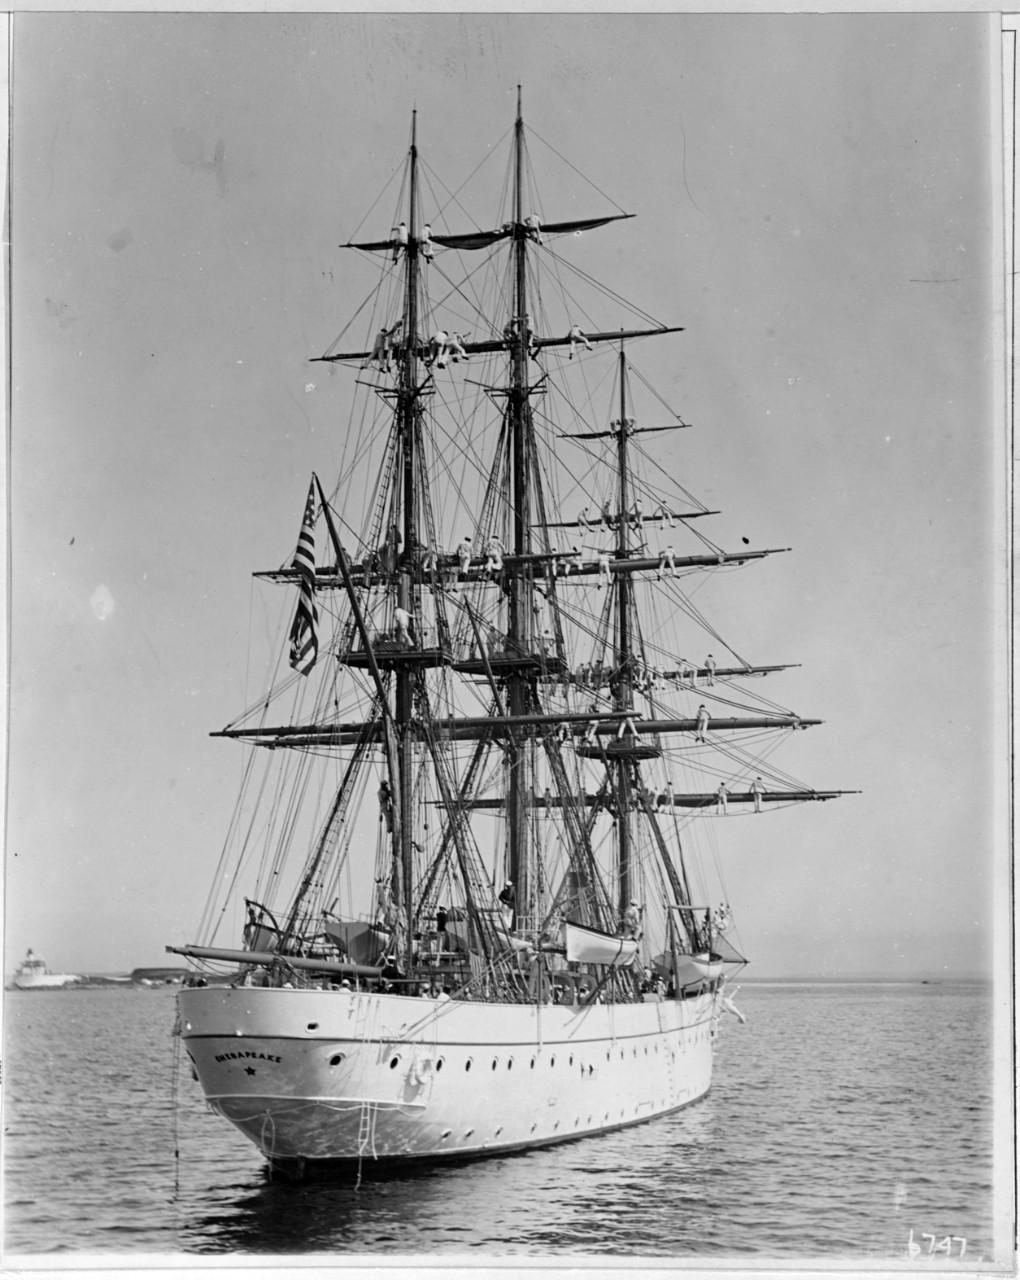 USS CHESAPEAKE (1899-1916)